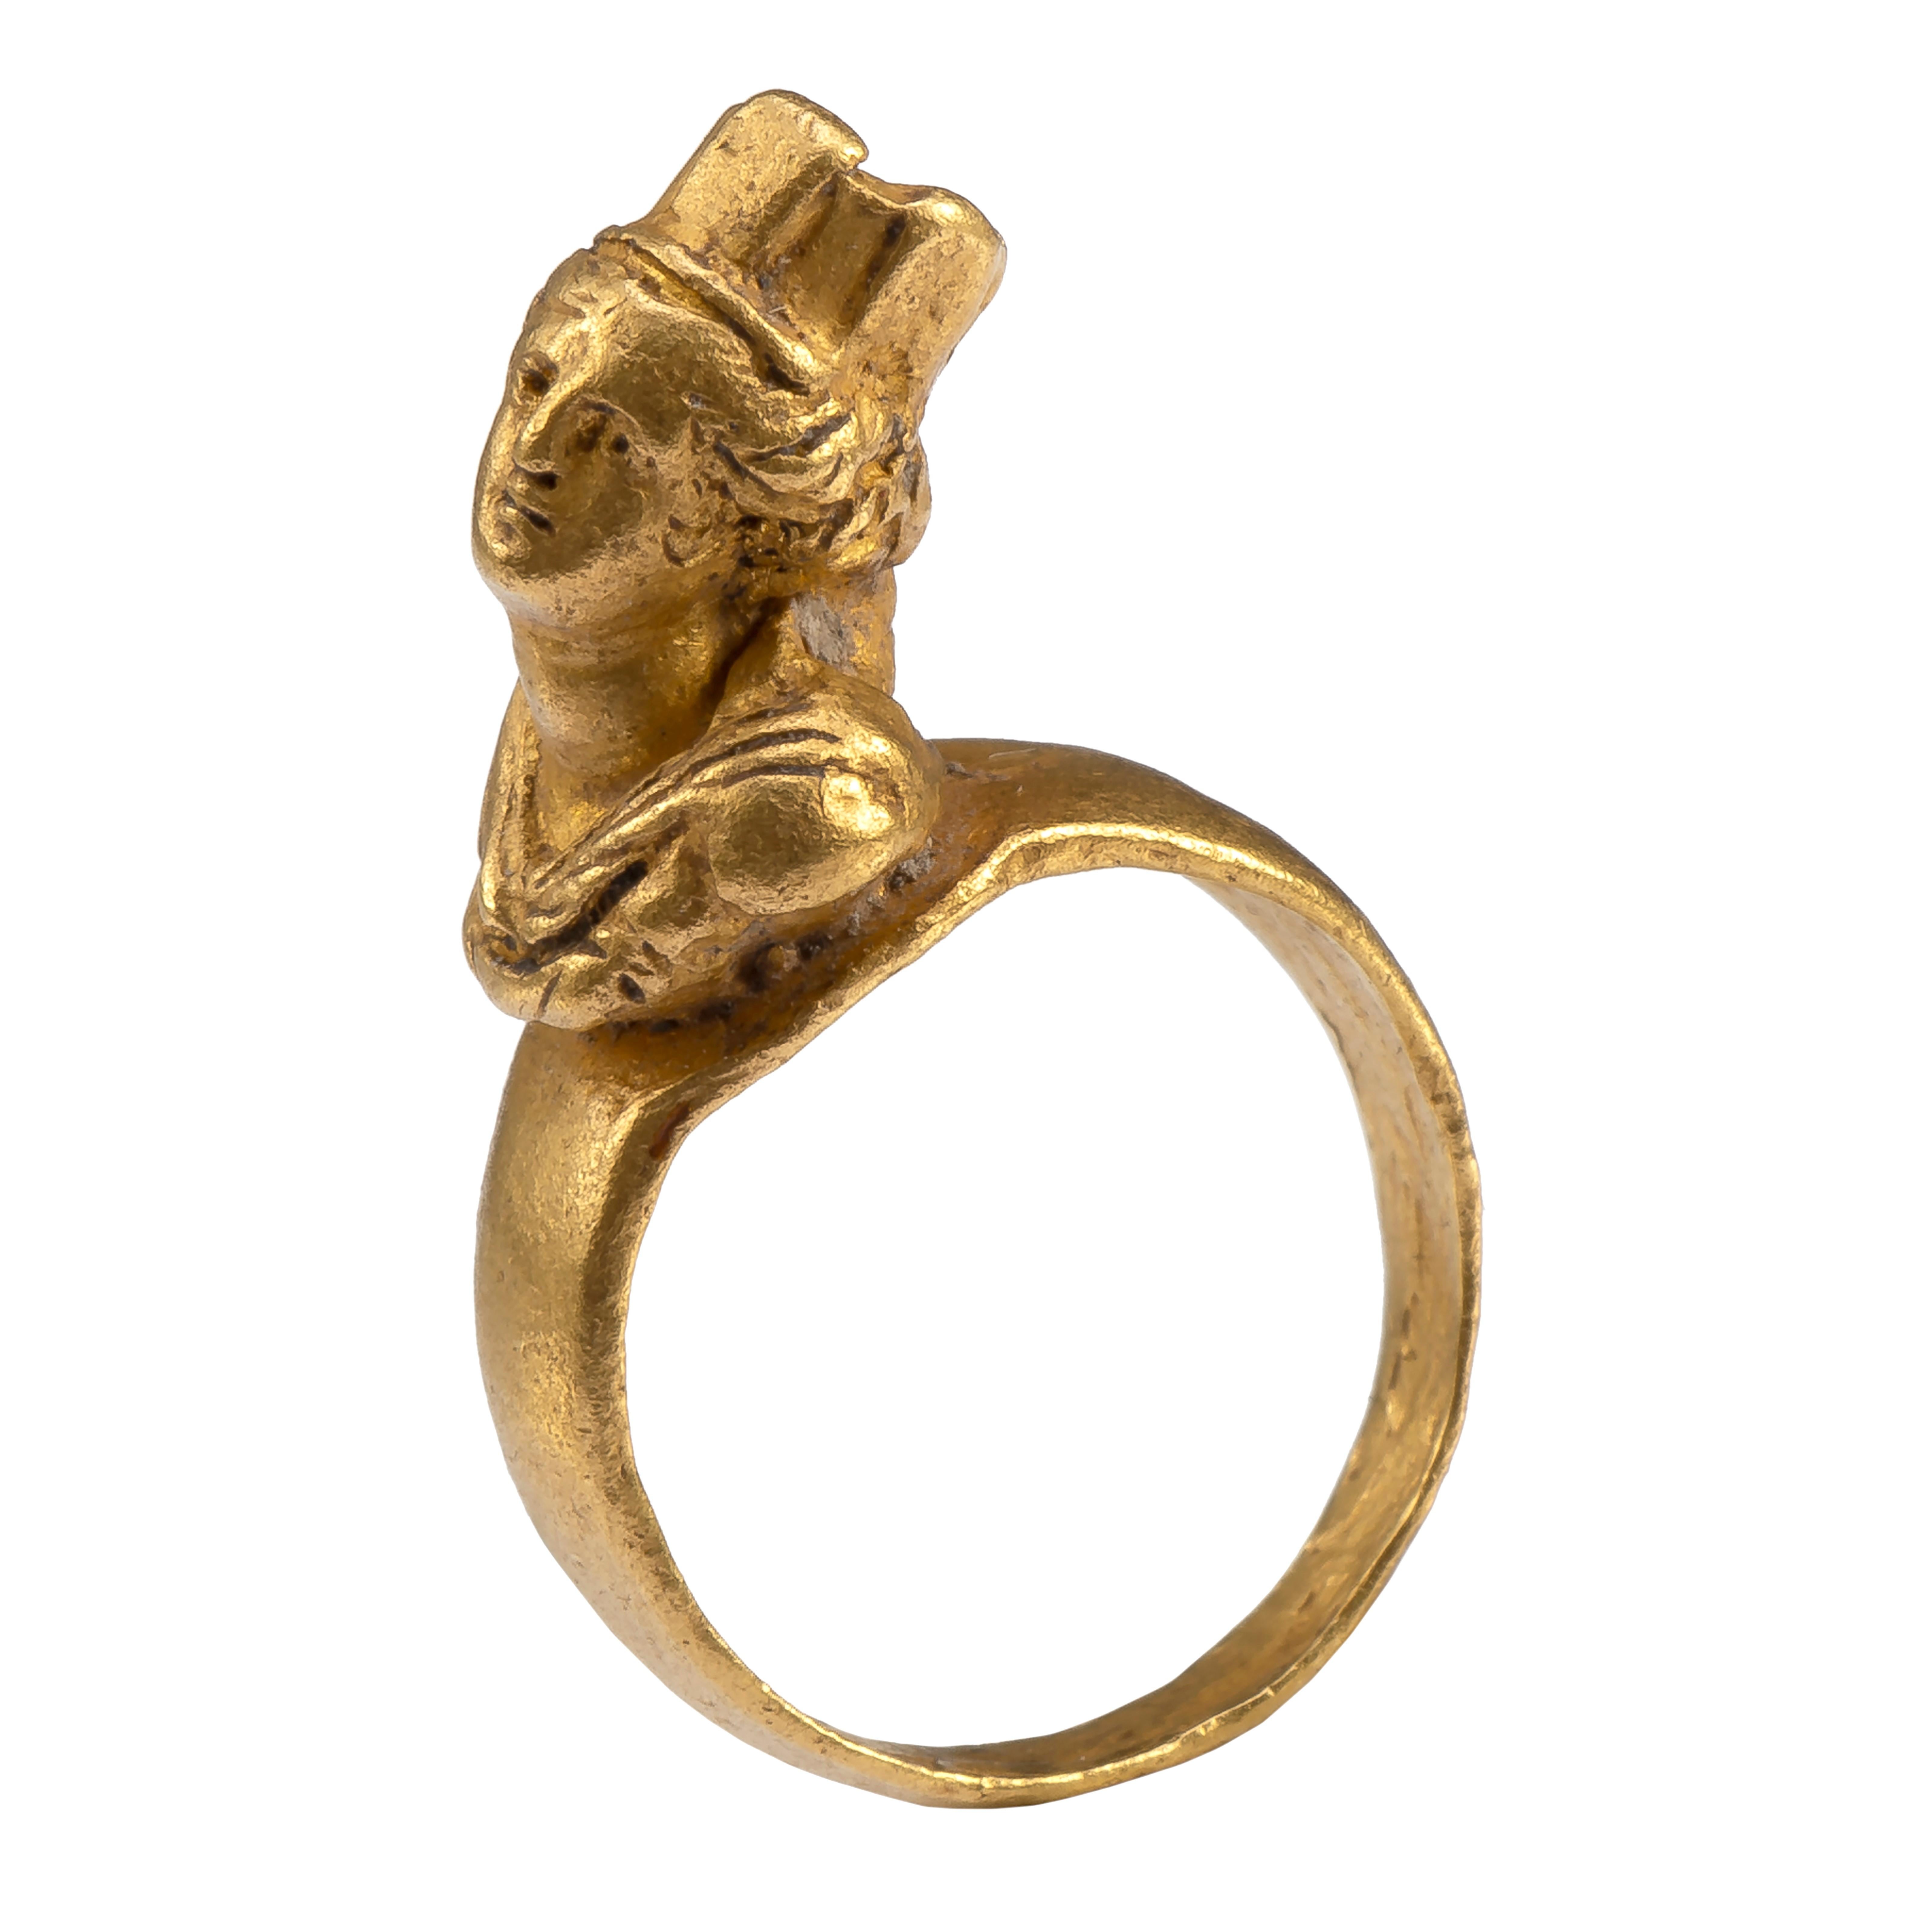 Ring mit Büste der Tyche
Römisch, spätes 1. Jahrhundert - 2. Jahrhundert ADS
Gold
Gewicht 4,4 gr.; Umfang 43,45 mm; US Größe 2 ¾ ; UK Größe E ½

Miniaturskulptur in Ringform der griechischen Göttin des Glücks. Dieser glorreiche Ring wird